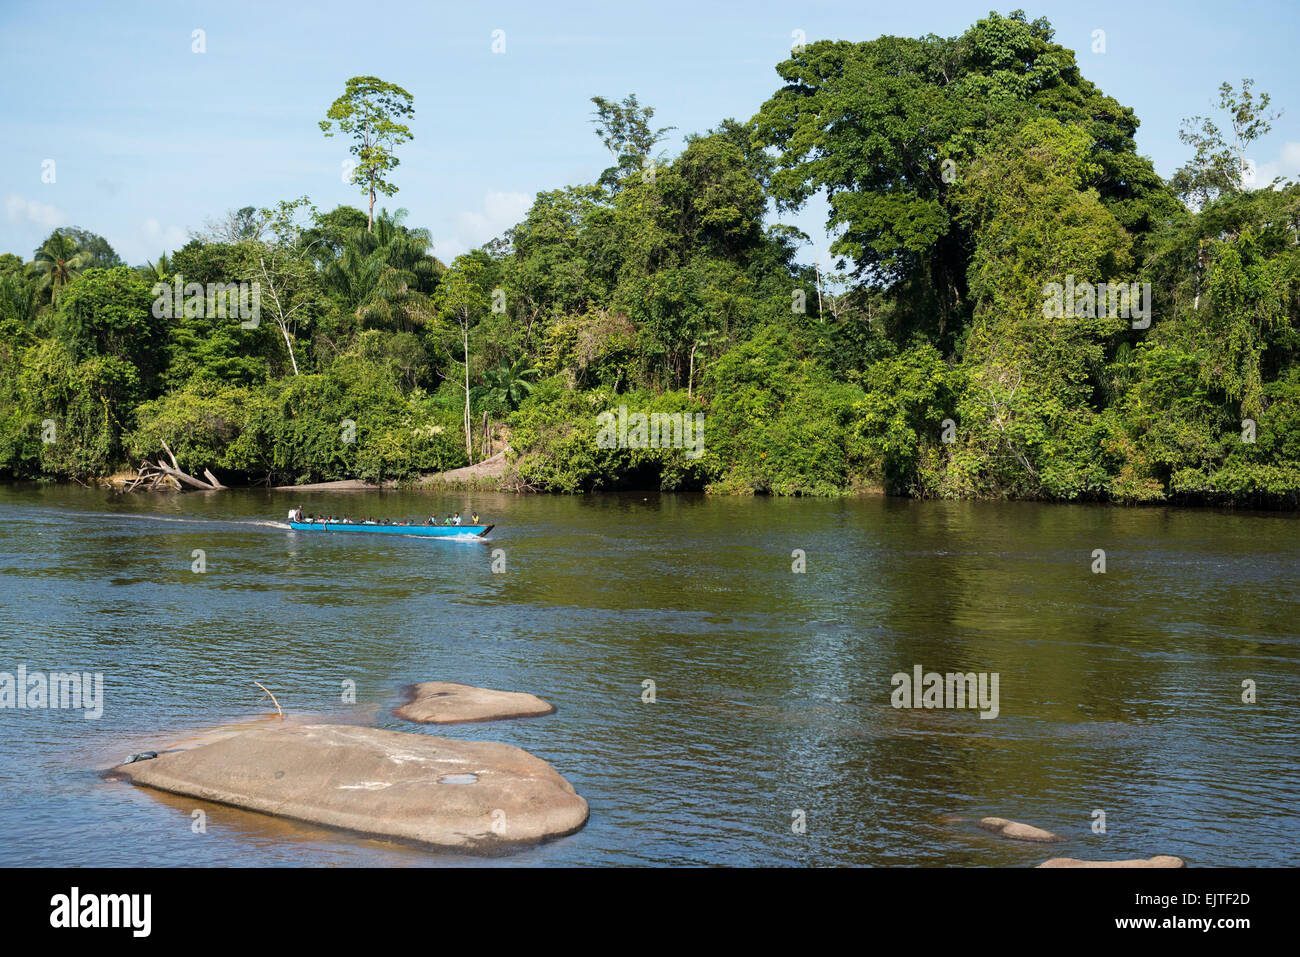 School boat on the Upper Suriname River, Suriname Stock Photo